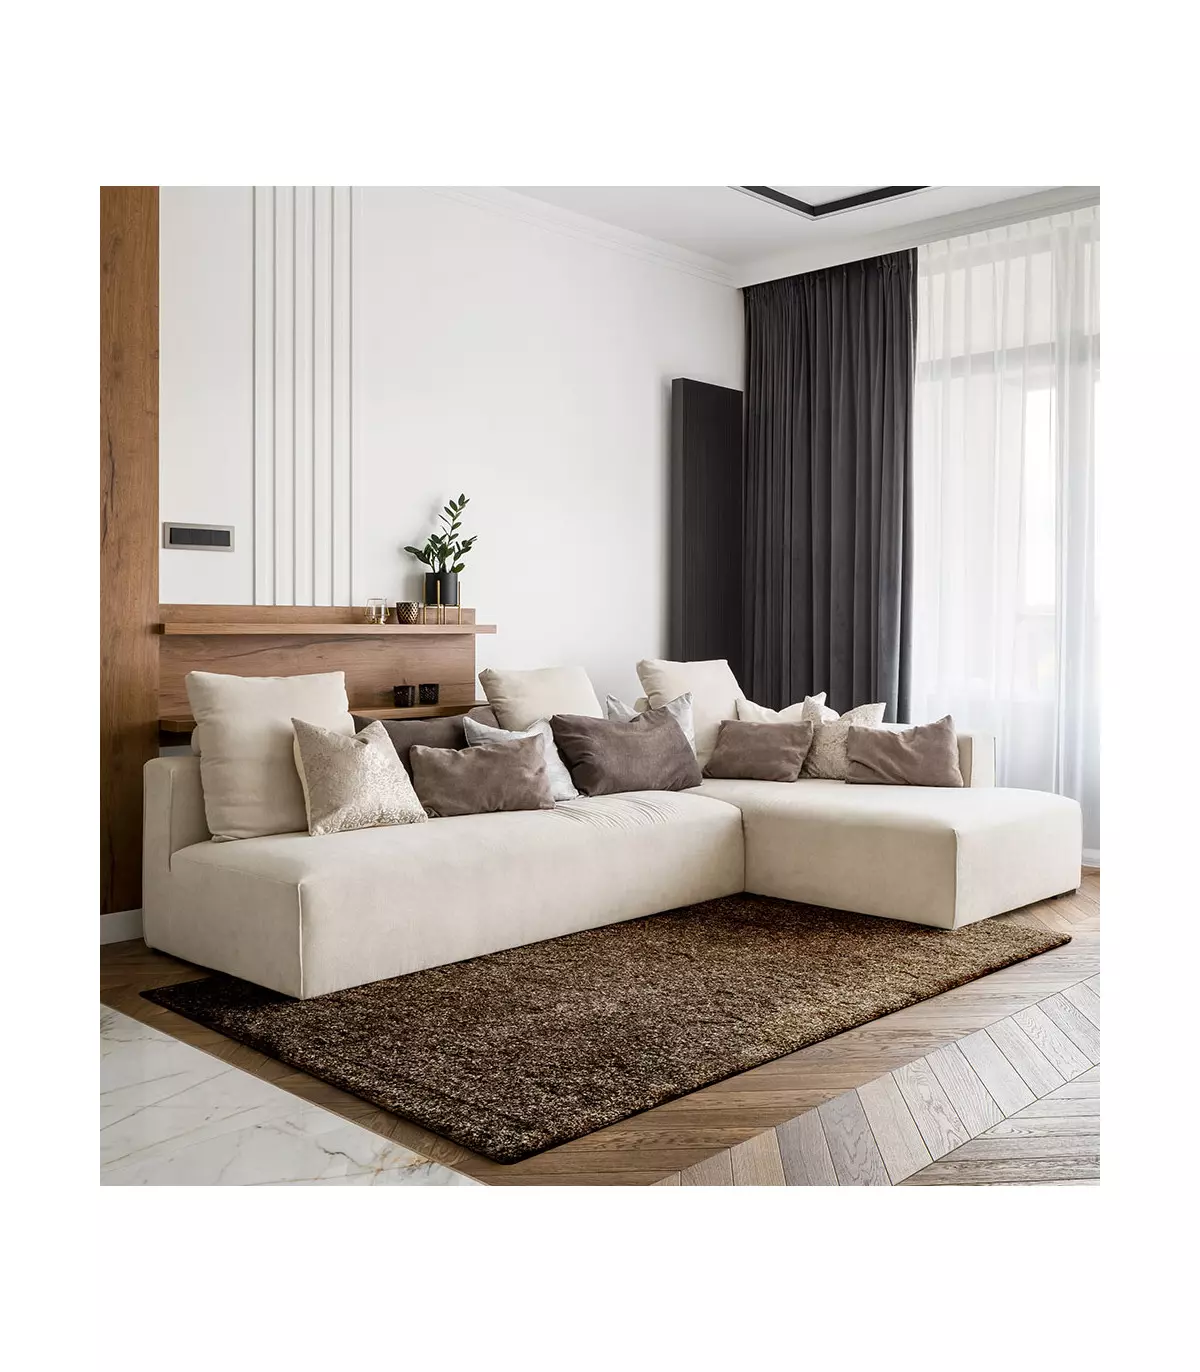 Tappeto moderno salotto o camera da letto, design tinta unita marrone